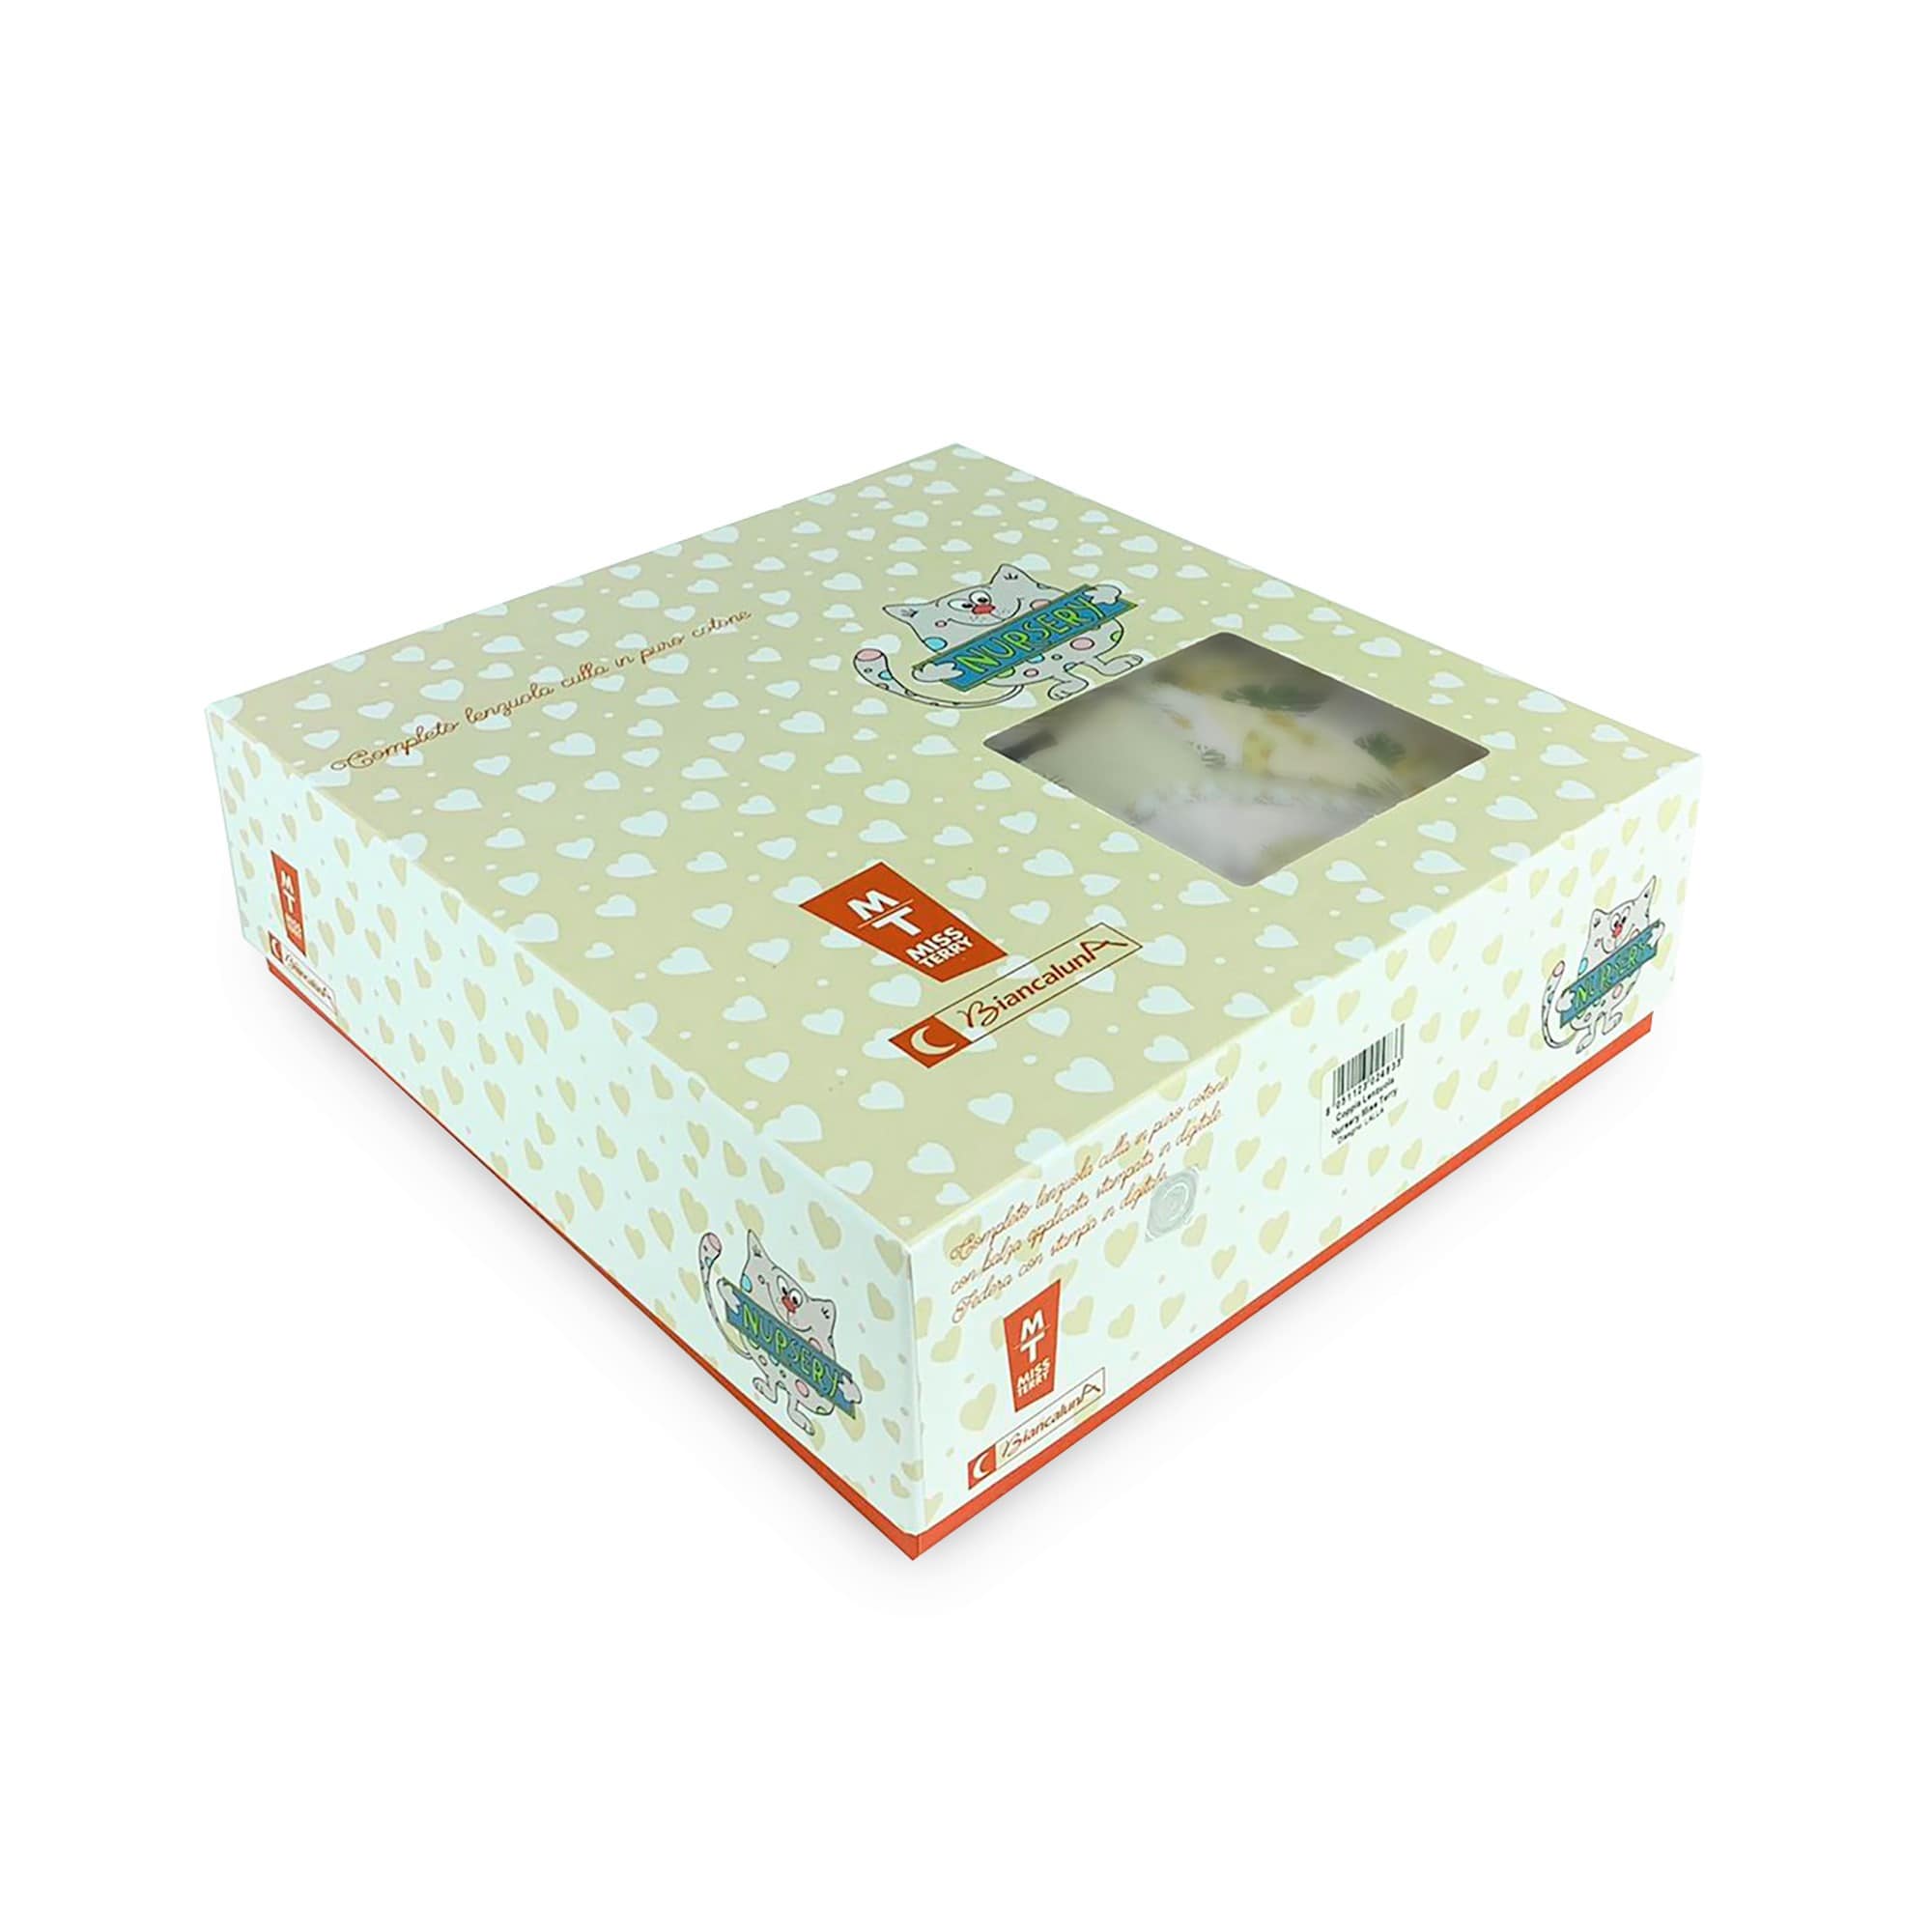 Completo lenzuola culla lettino in cotone Biancaluna stampa digital set 3pz 4154